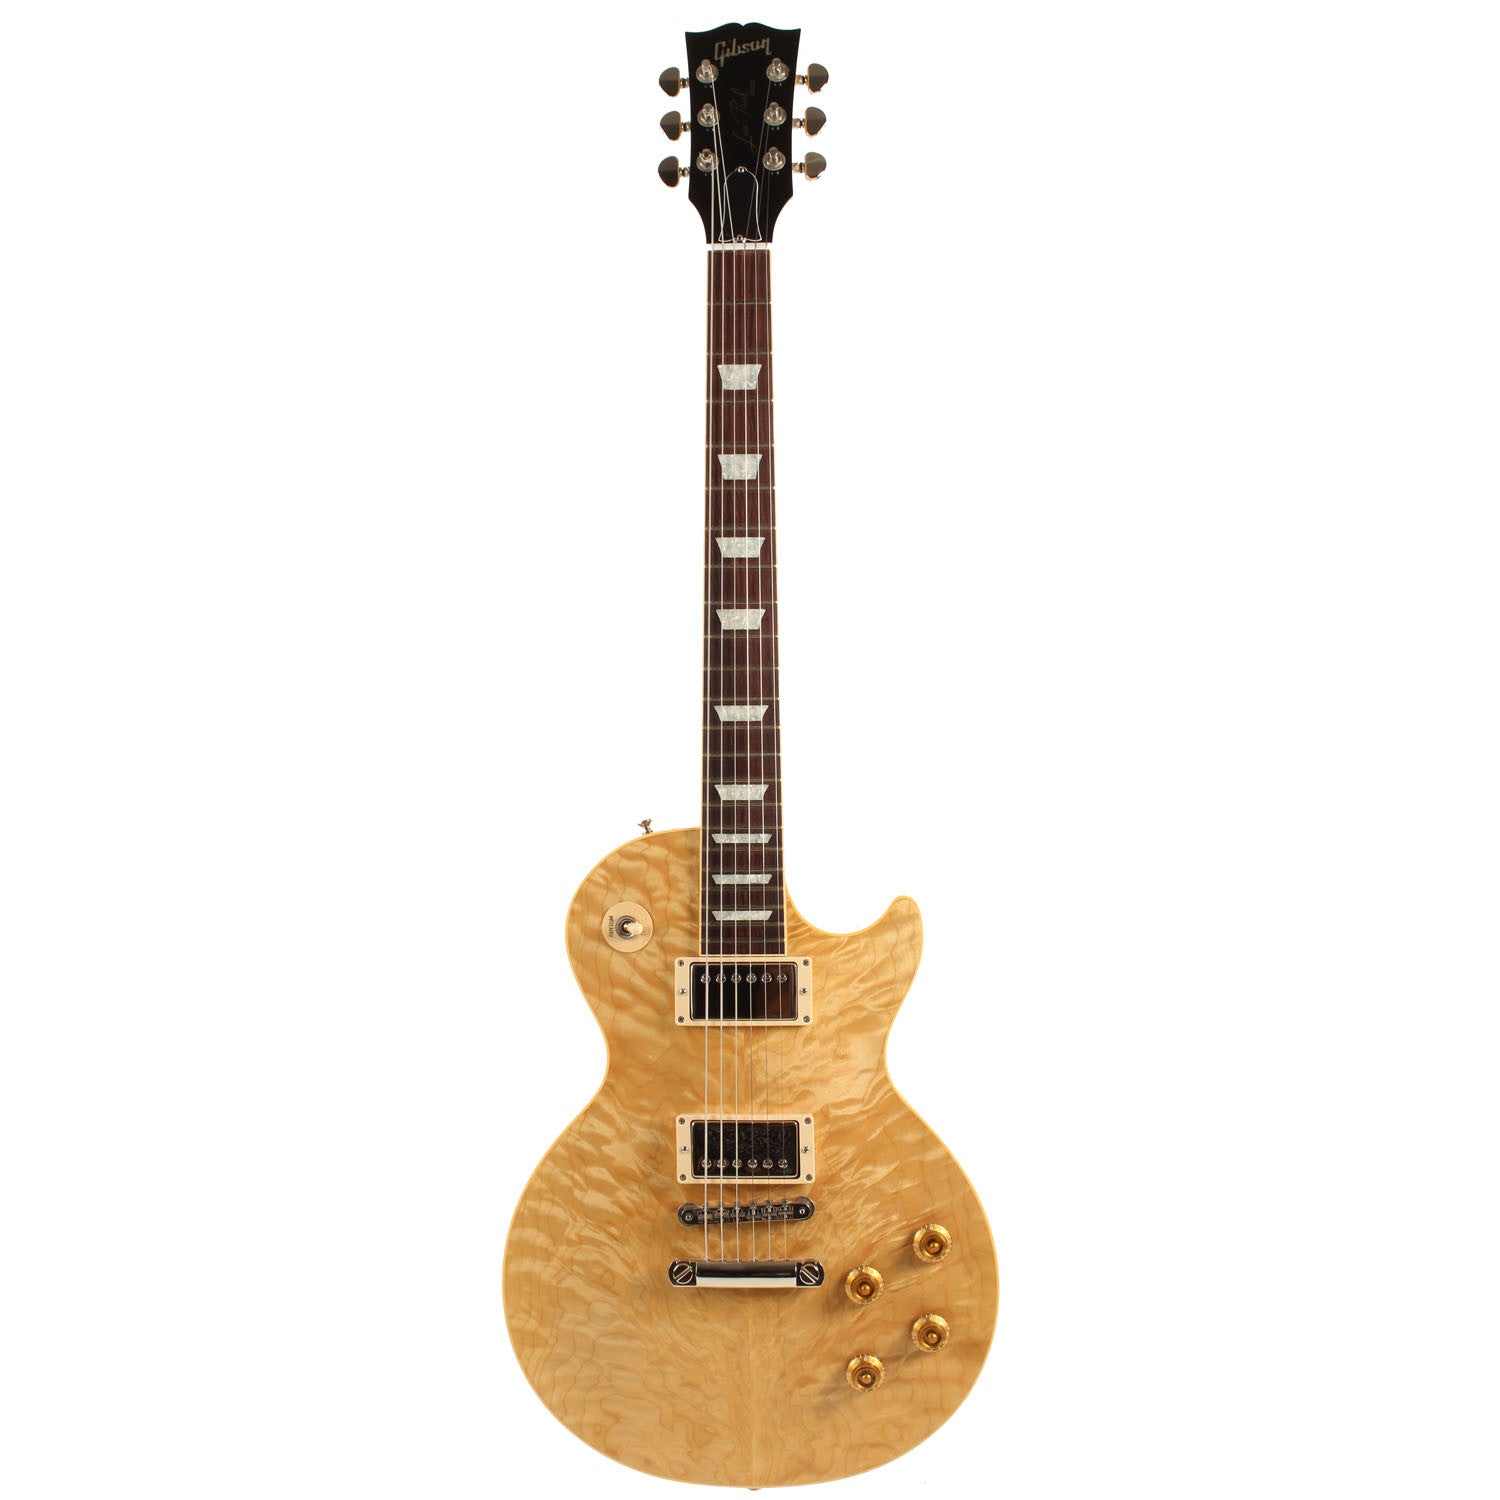 2001 Gibson Custom Shop Les Paul Standard Korina with Quilt top - Garrett Park Guitars
 - 3